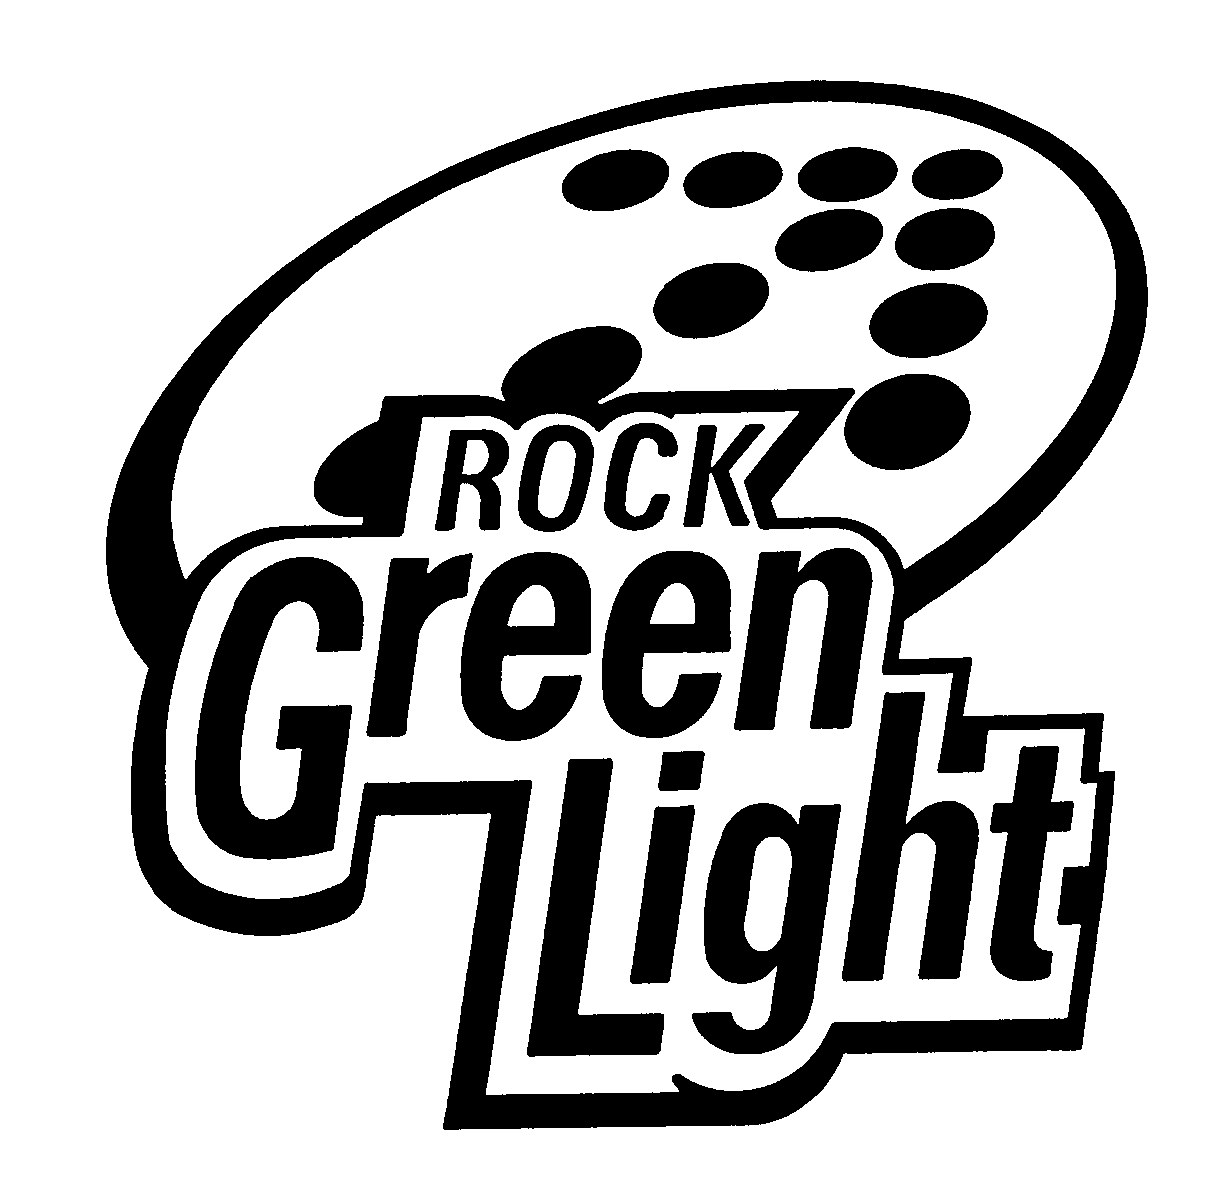  ROCK GREEN LIGHT